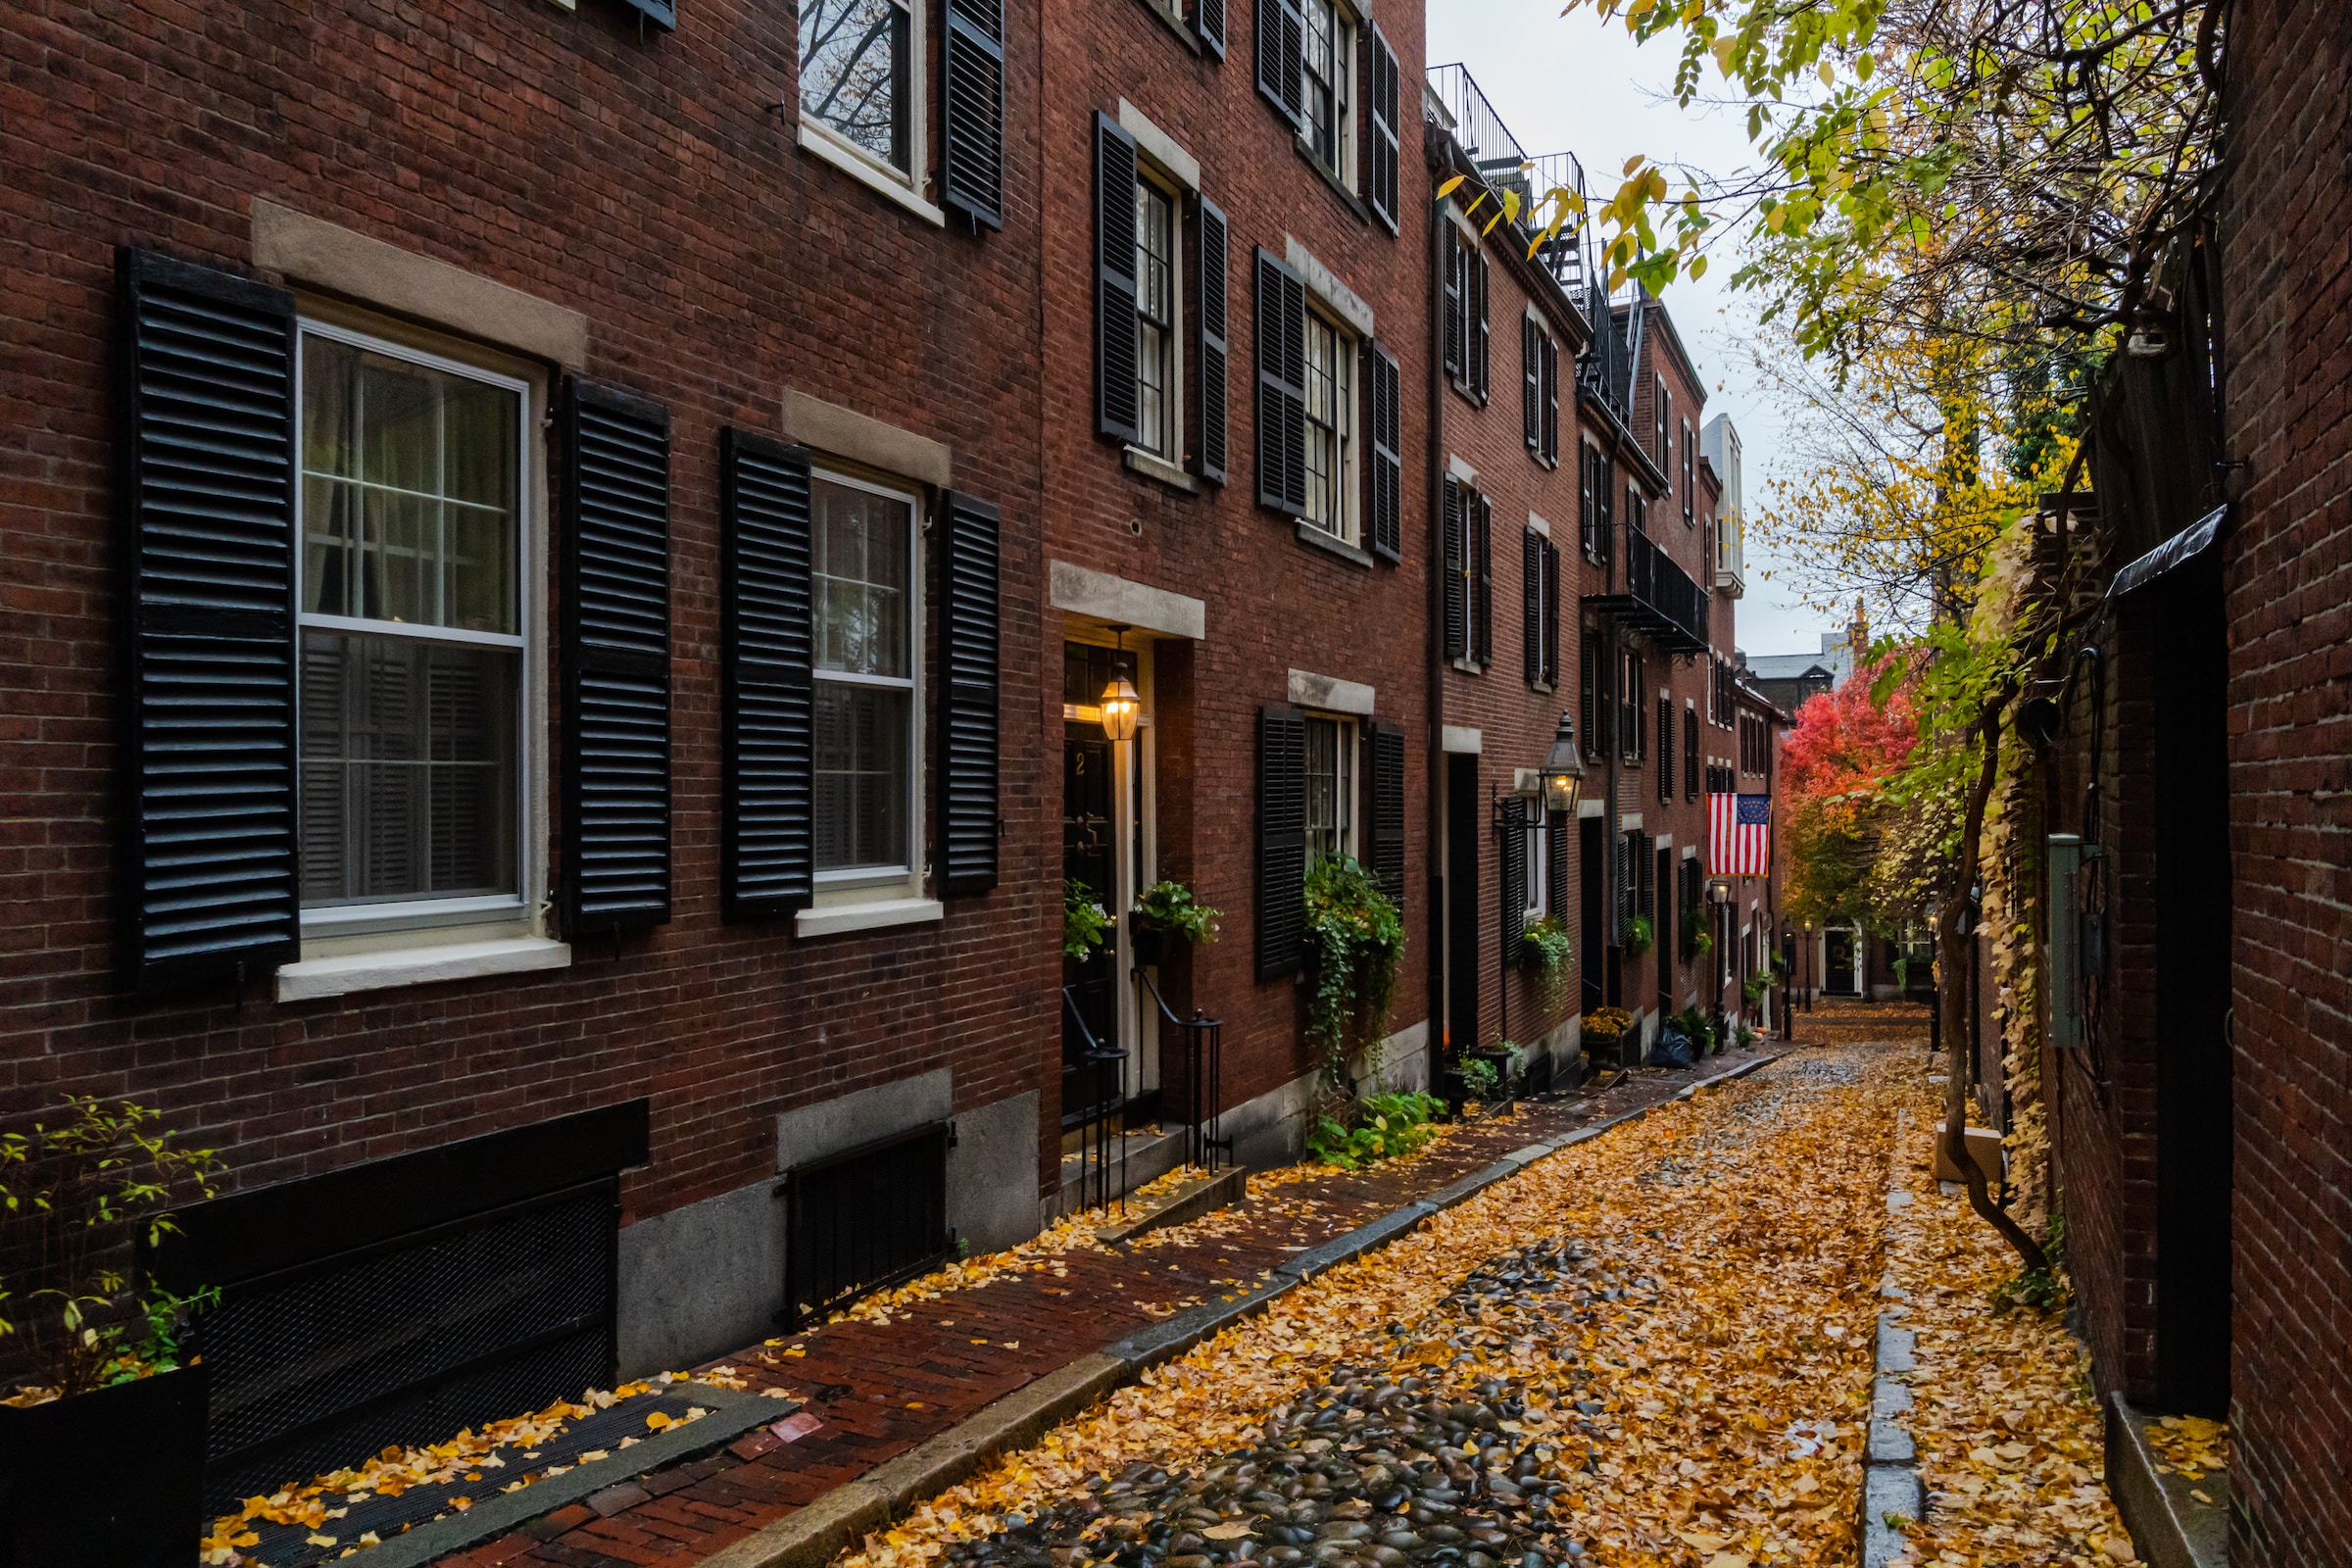 Boston's historic Acorn Street